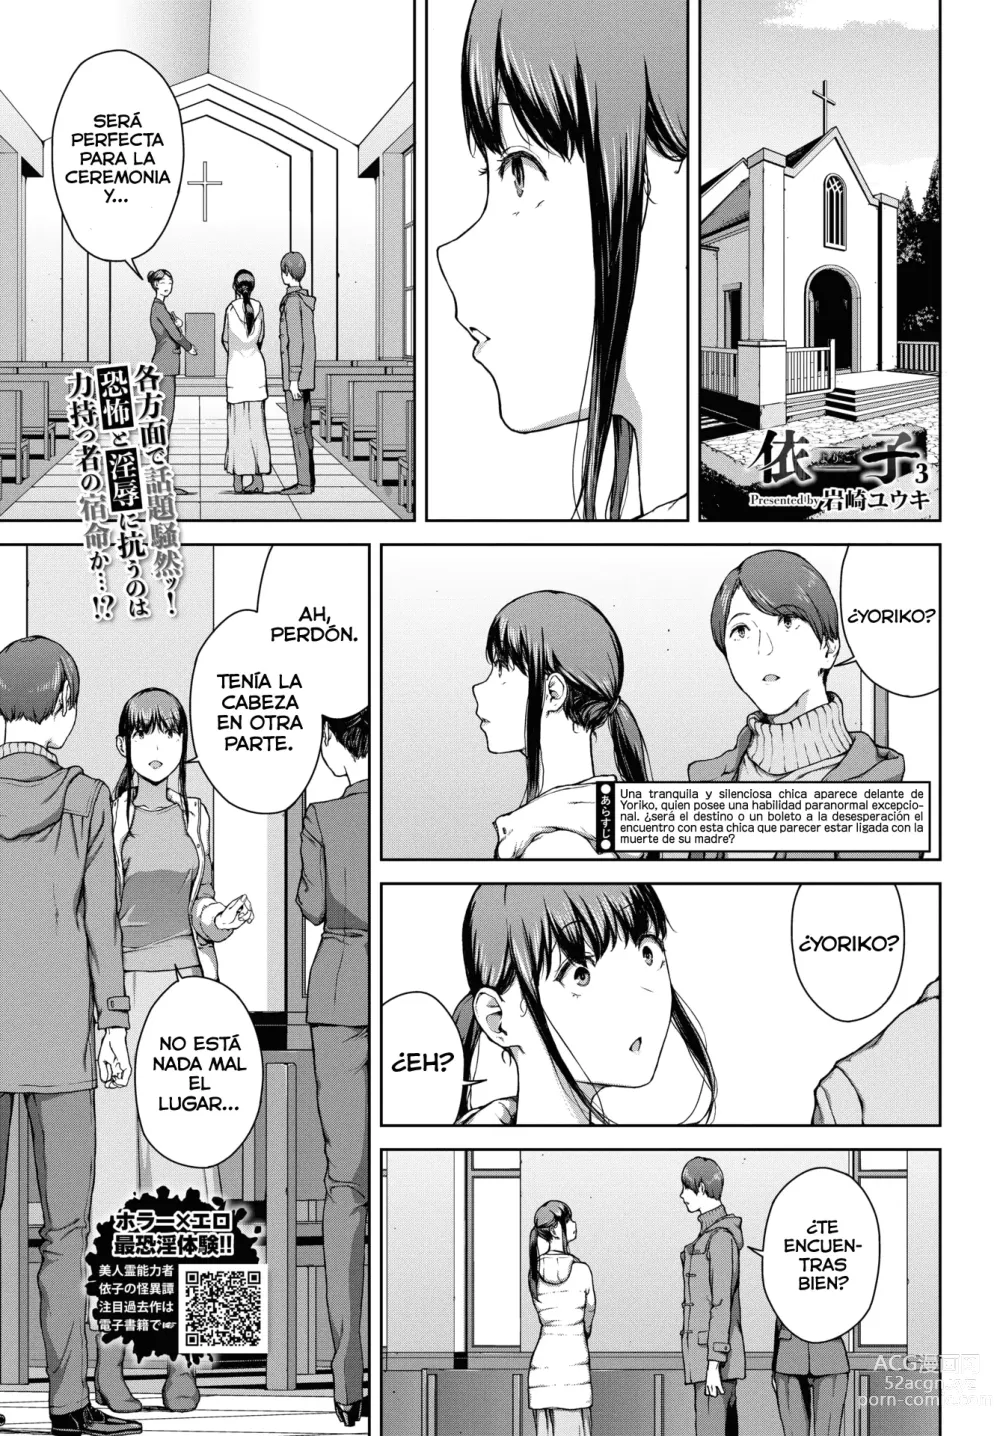 Page 1 of manga Yoriko Parte 03